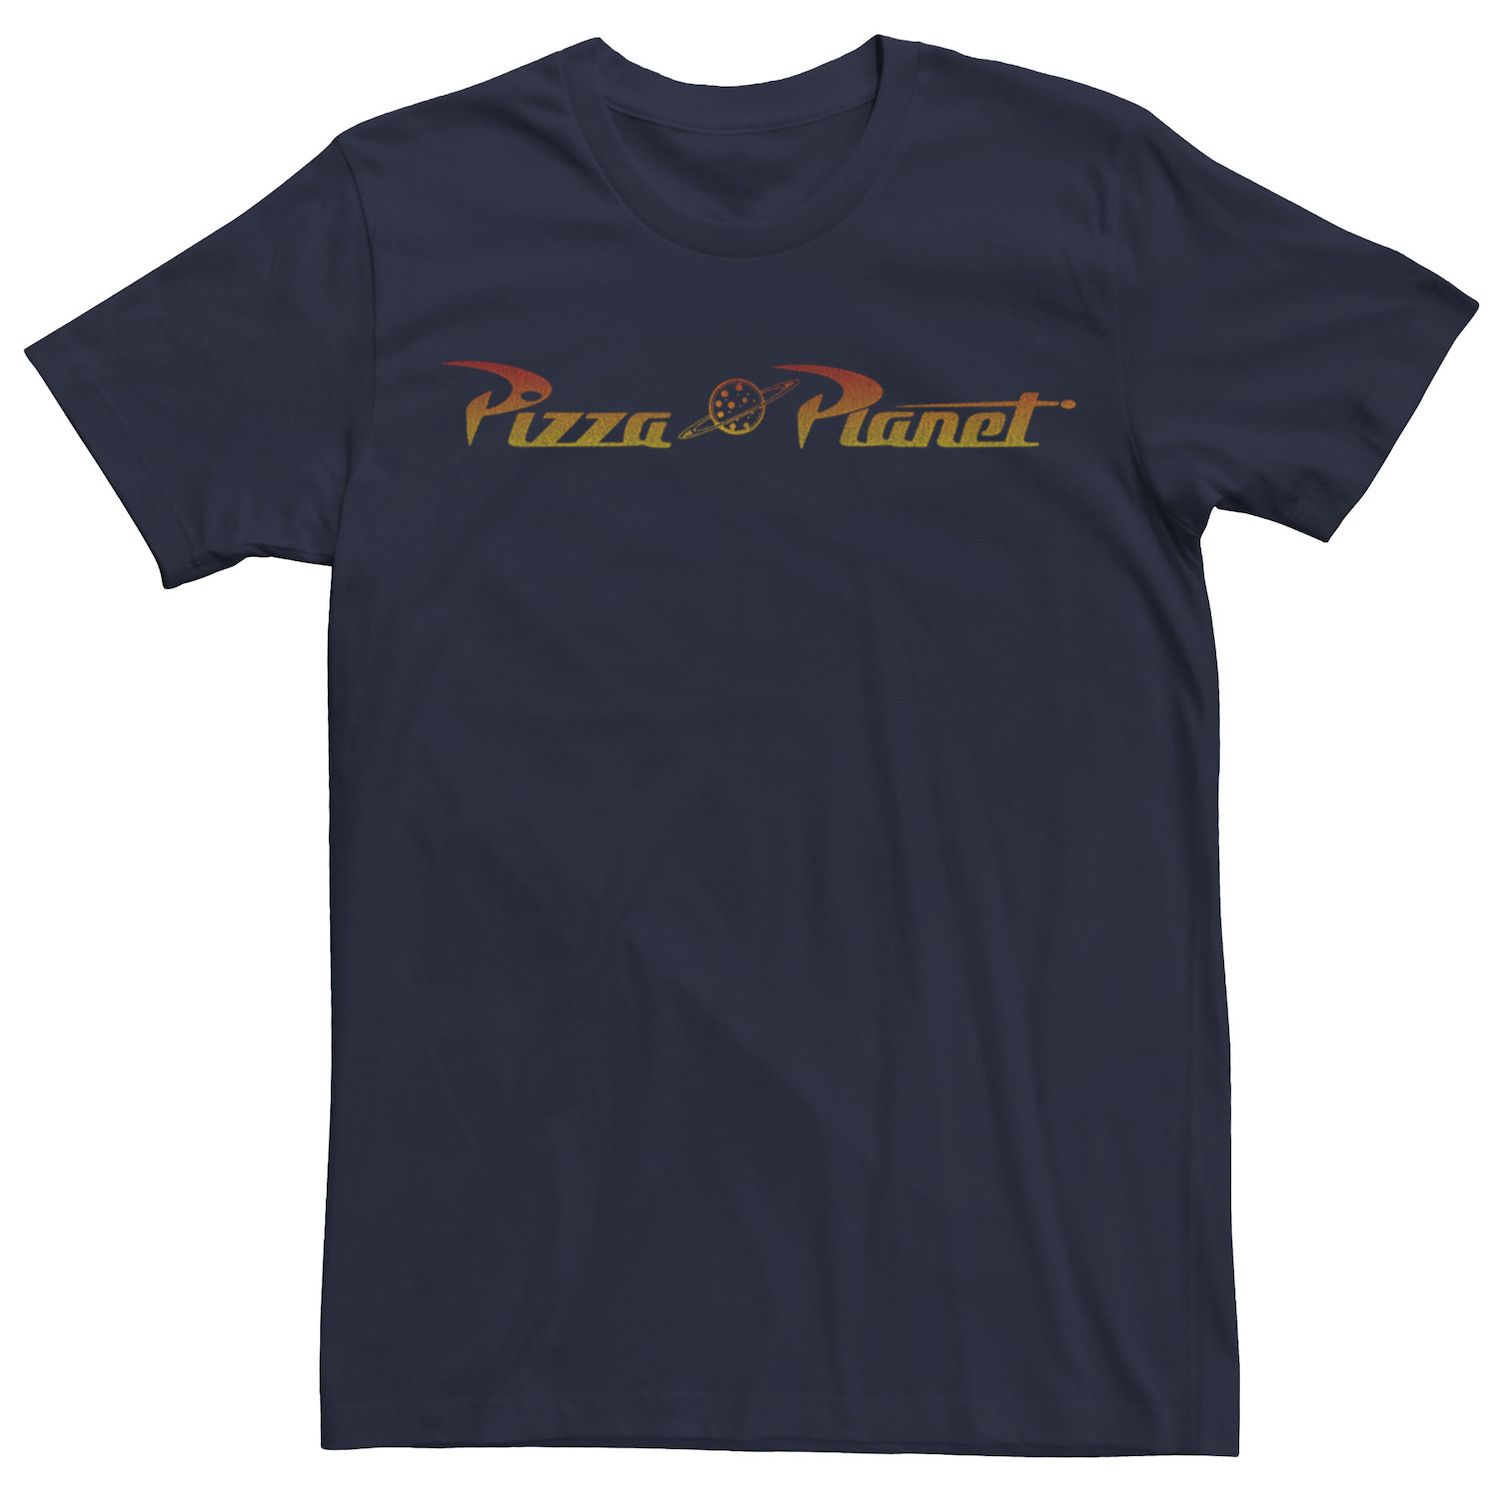 Мужская классическая футболка с логотипом Disney/Pixar «История игрушек Пицца Планета» Disney / Pixar мужская футболка планета пицца s черный